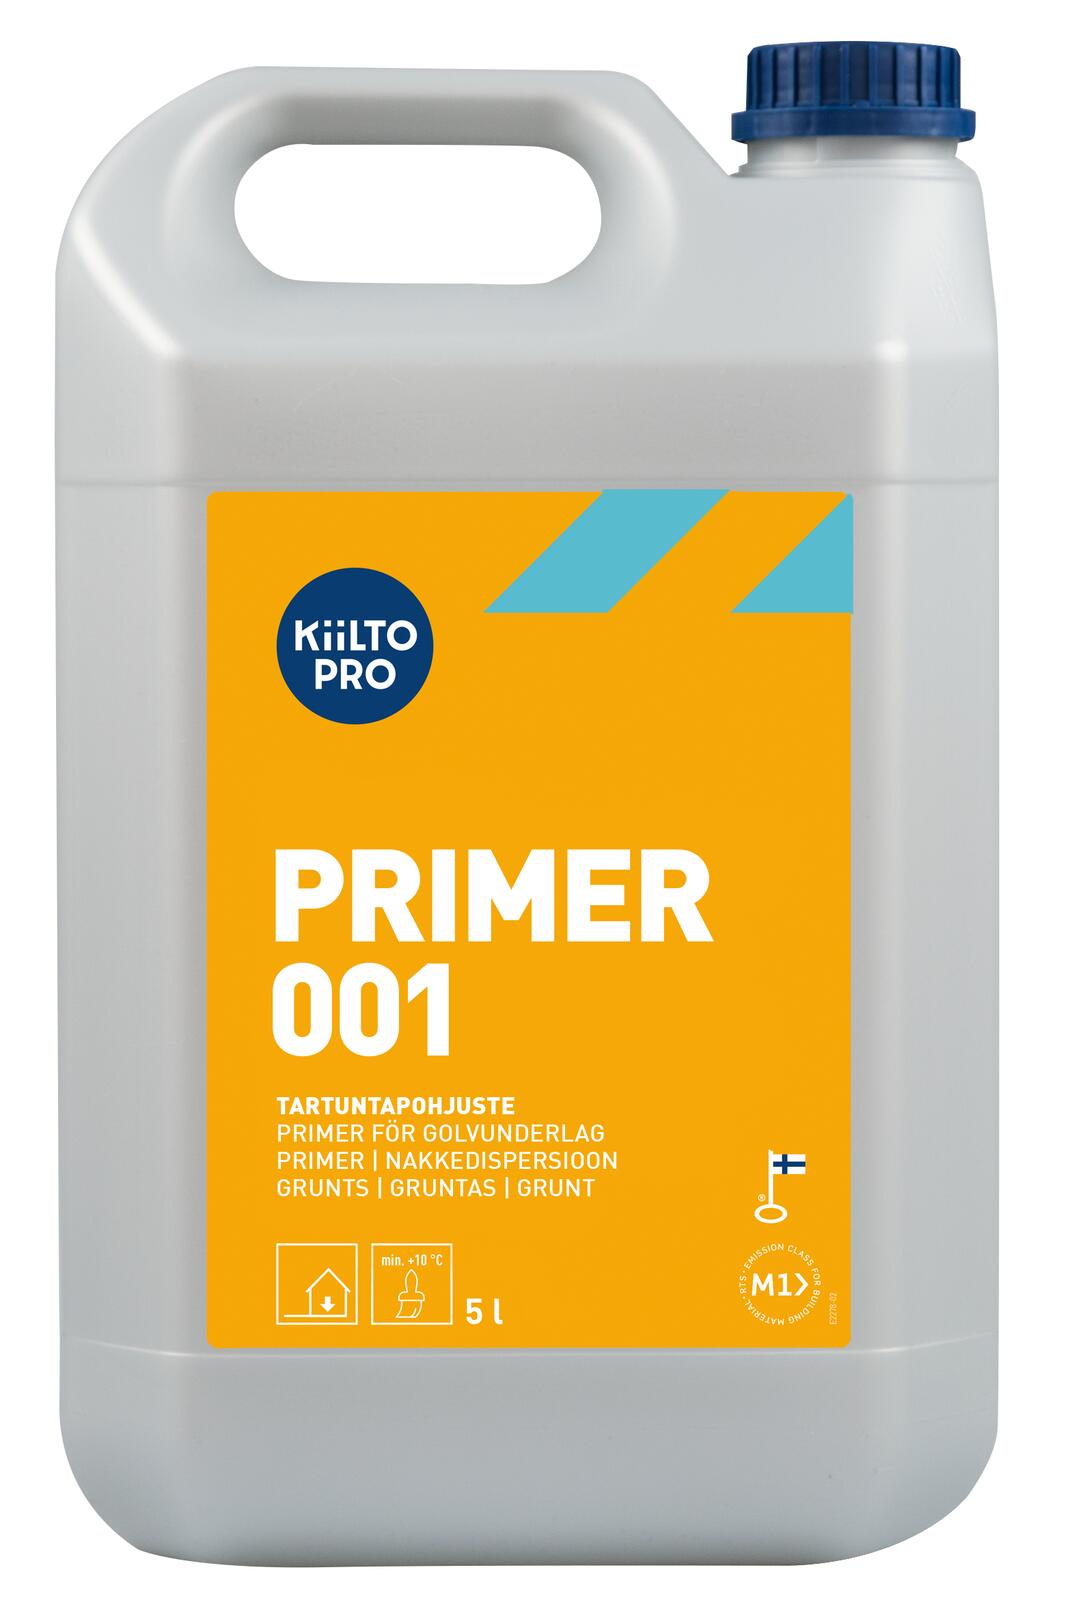 Kiilto Pro Primer 001